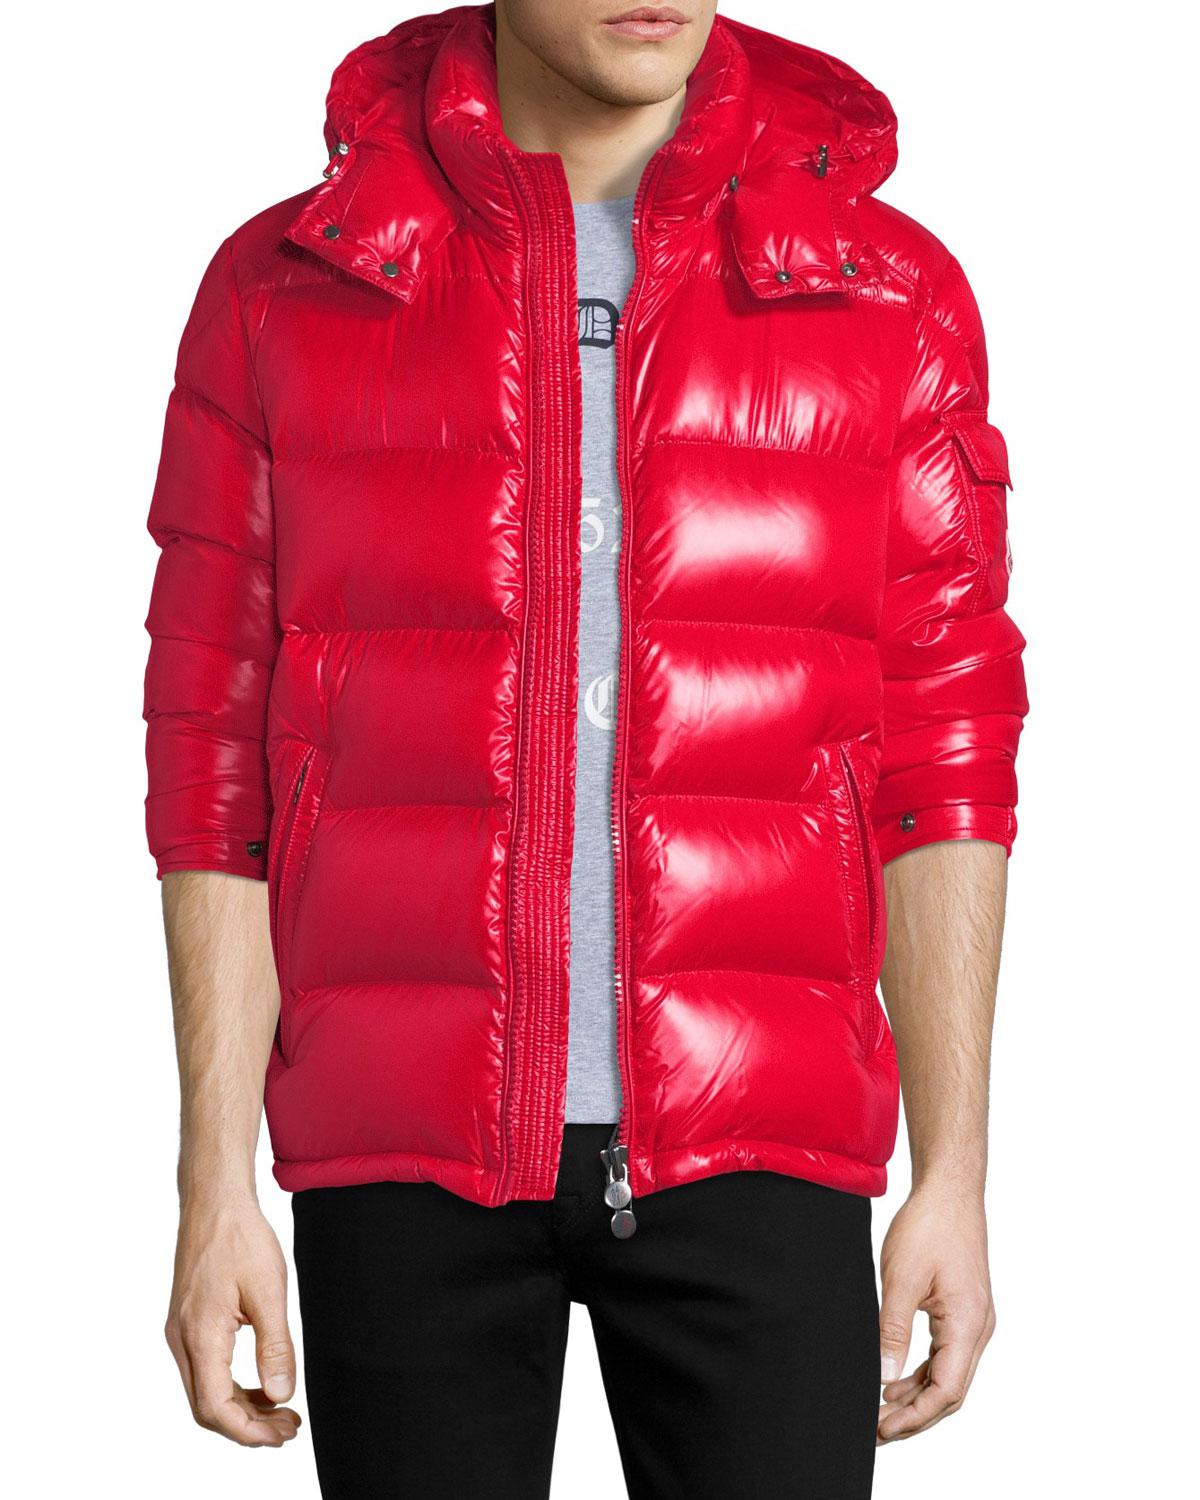 moncler maya jacket red